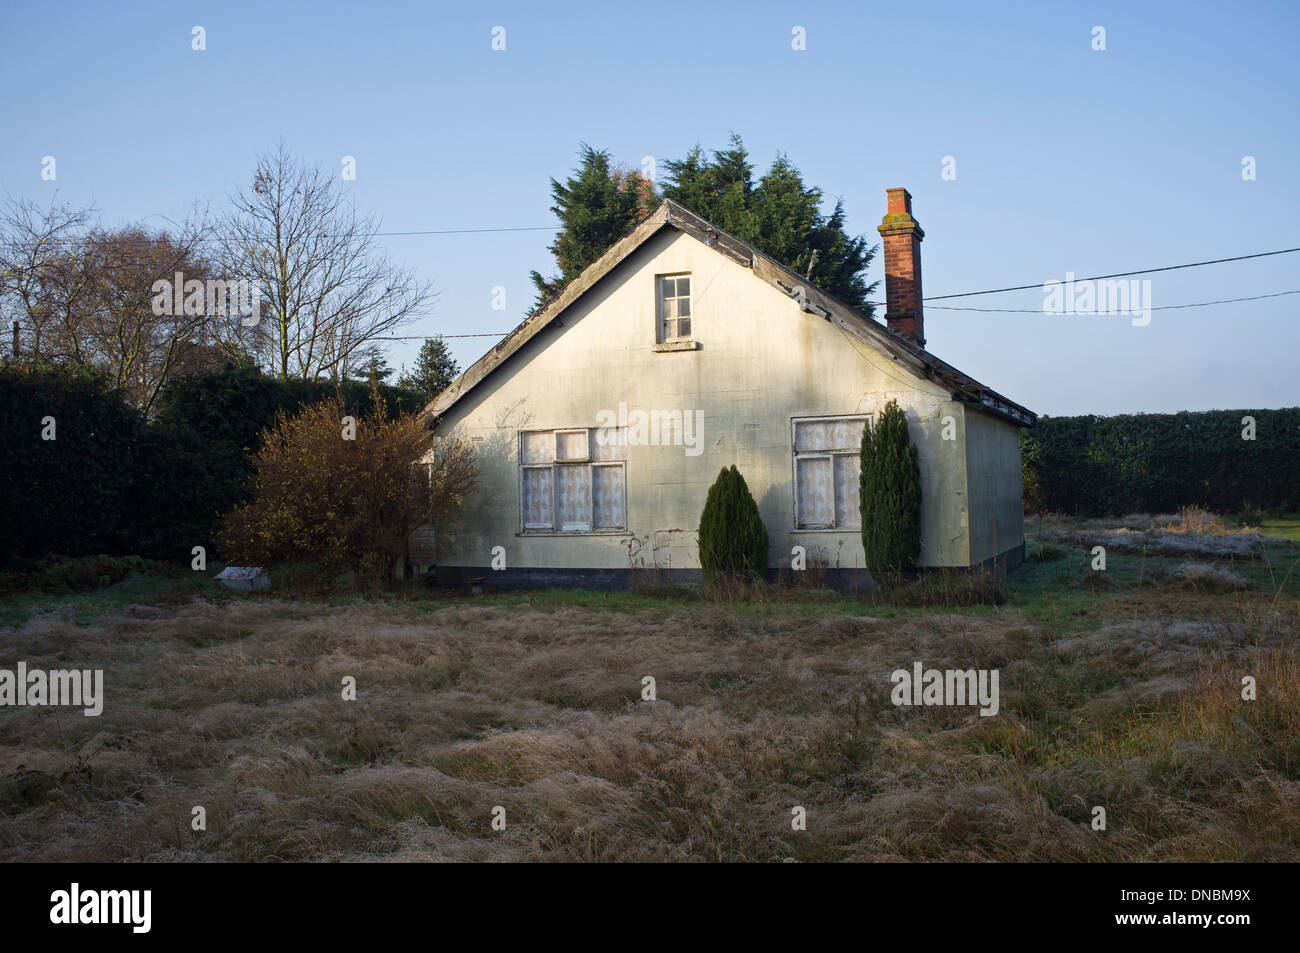 Abandoned house UK Stock Photo